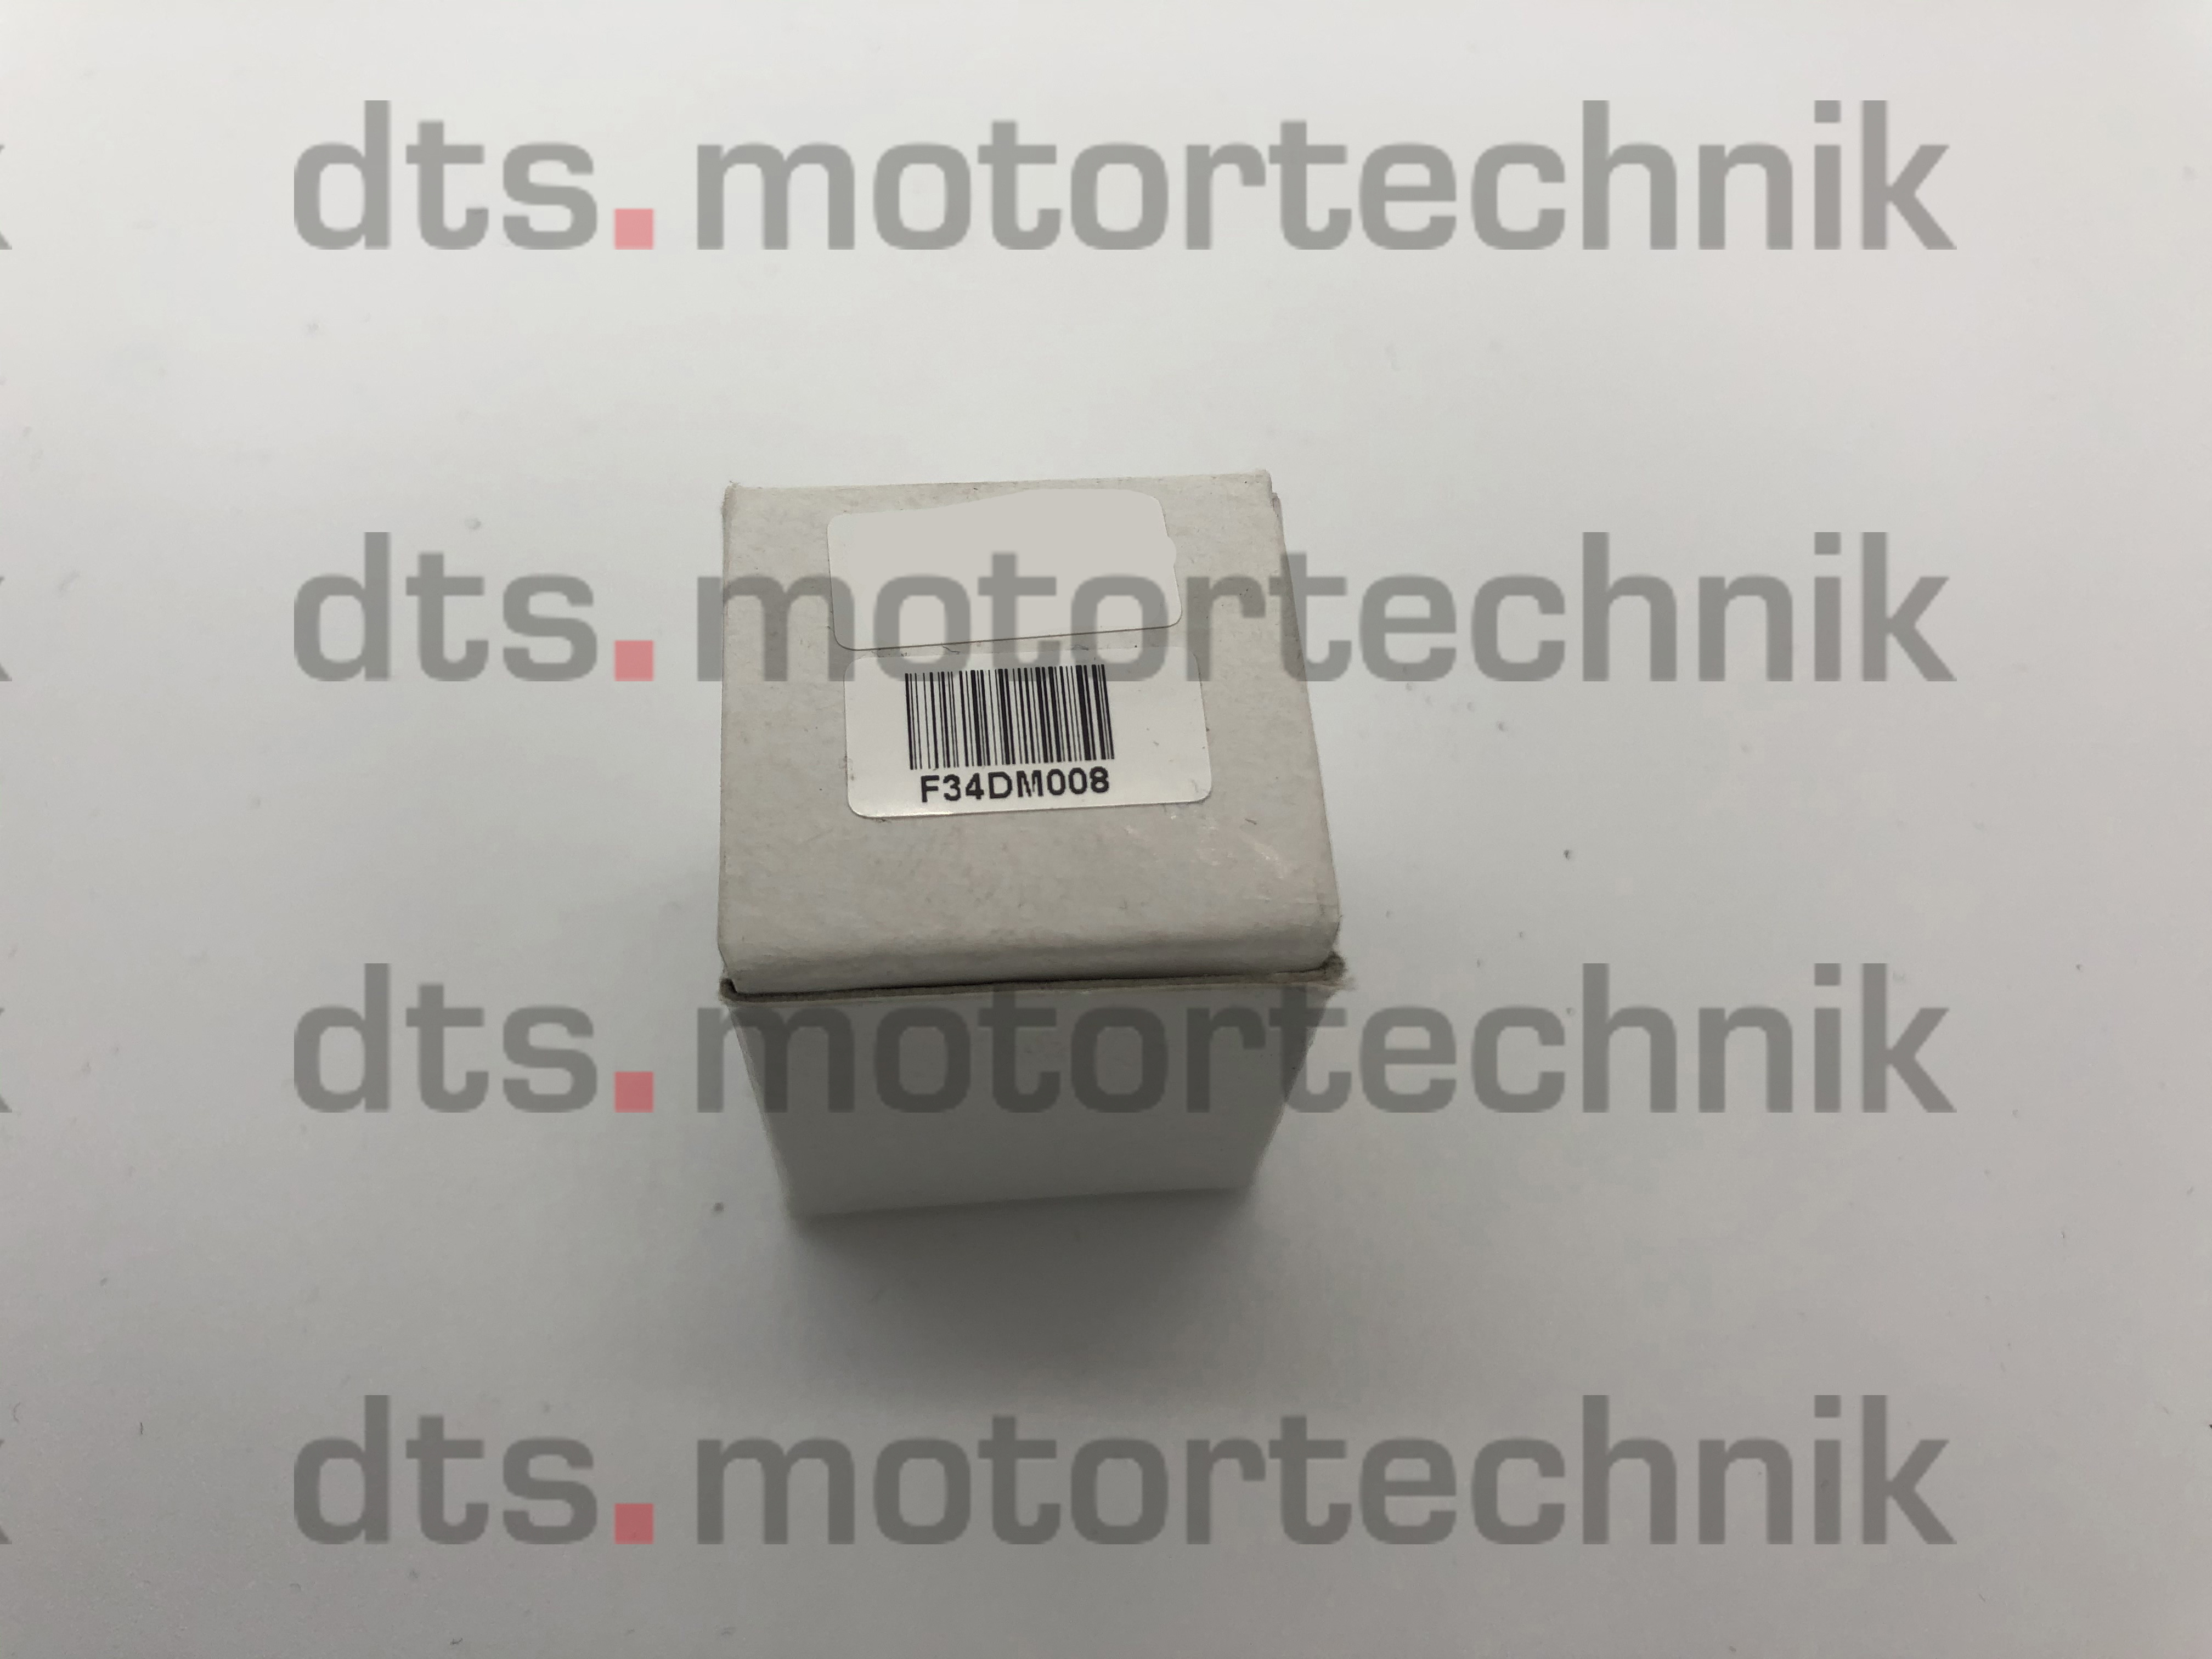 Bosch EDC7 (Trucks) - Motorola MPC5xx CPU Terminaladapter (F34DN003 erforderlich)